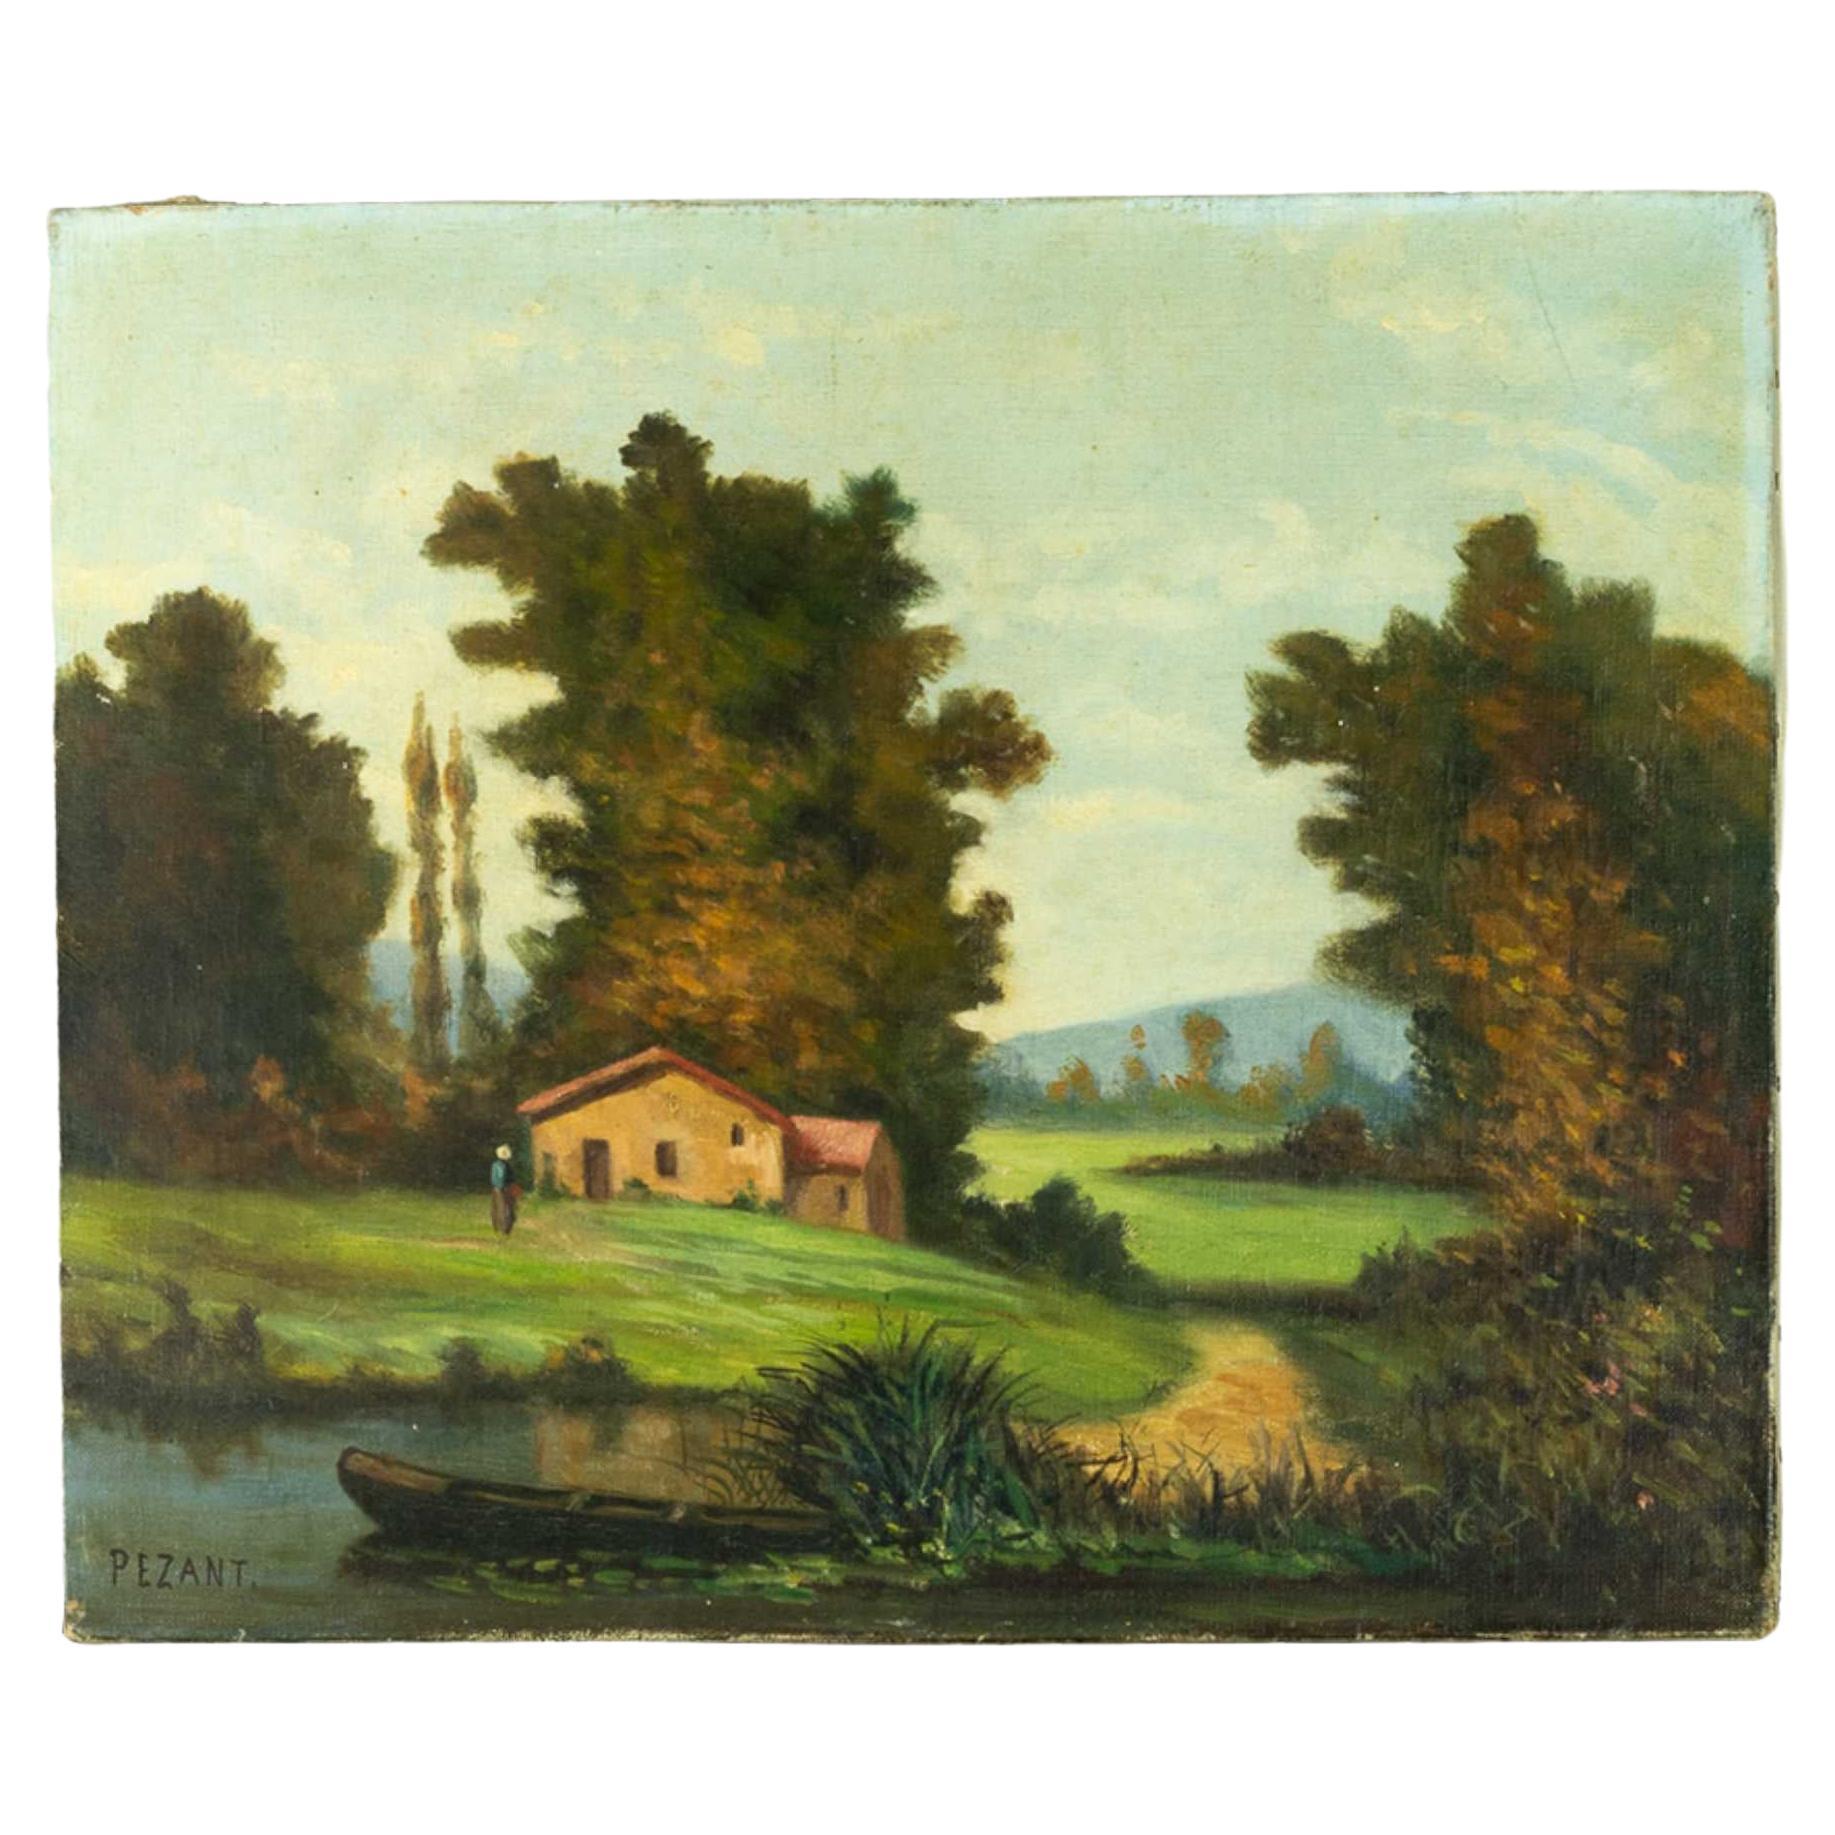 Ein französisches Landschaftsgemälde mit einer Hütte an einem Fluss und einem kleinen Boot in der Nähe, in der unteren linken Ecke mit 